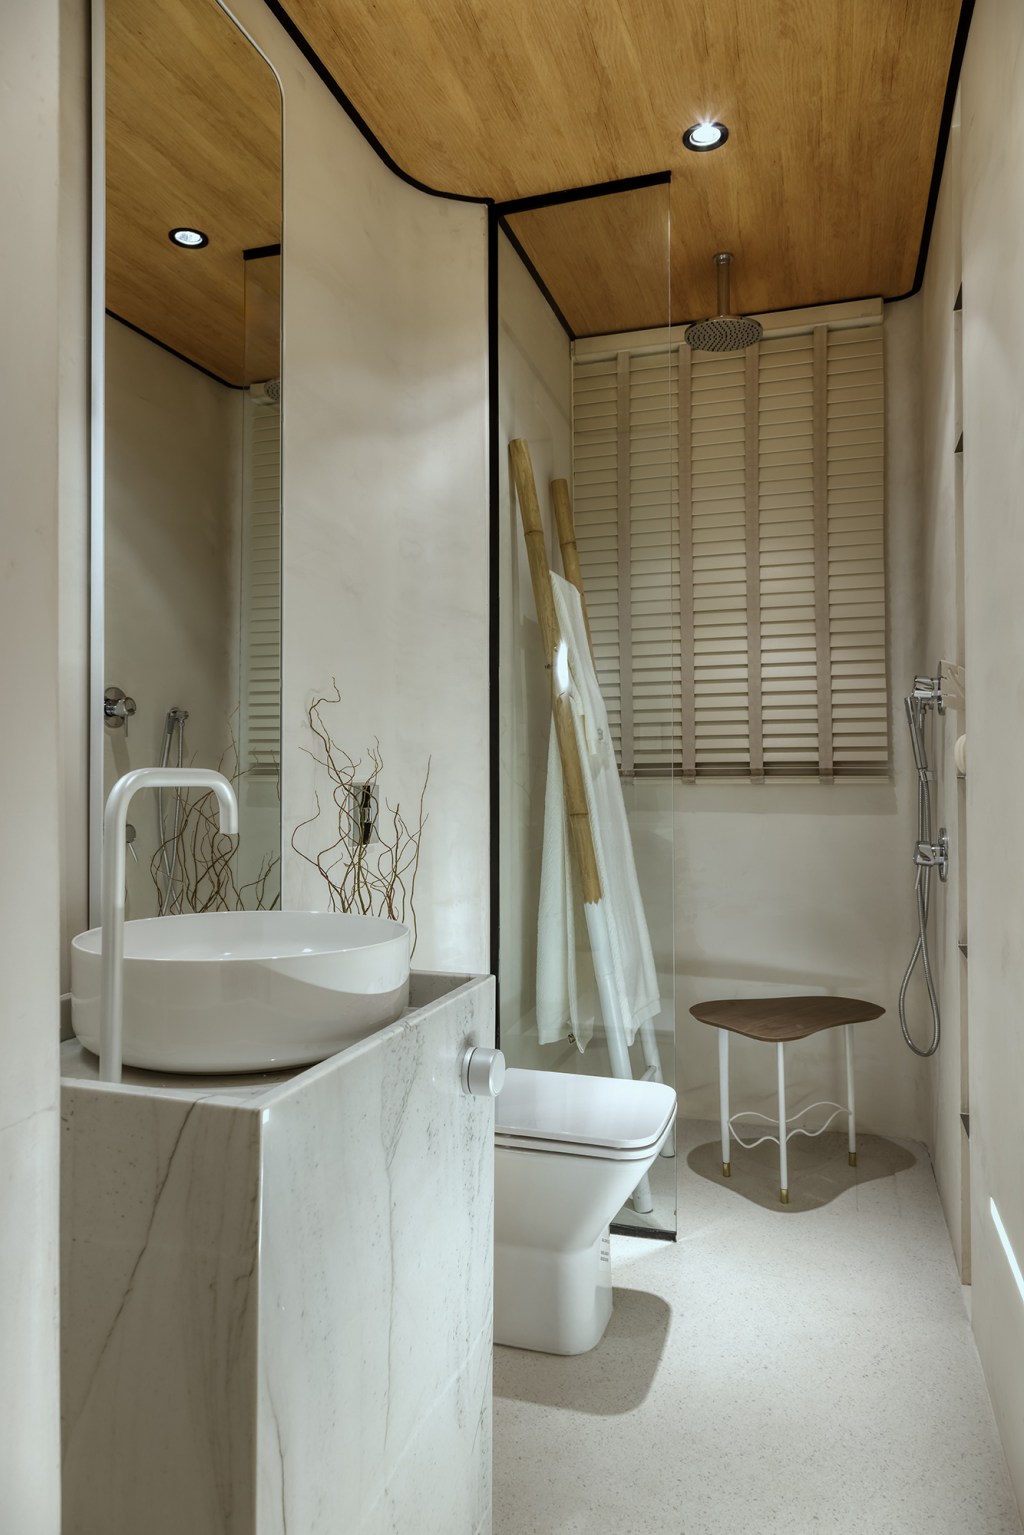 Moura Jabour Arquitetos - Suíte Colo. Projeto da CASACOR Minas Gerais 2023. Na foto, banheiro com teto de madeira, esquadrias pretas e louças brancas.